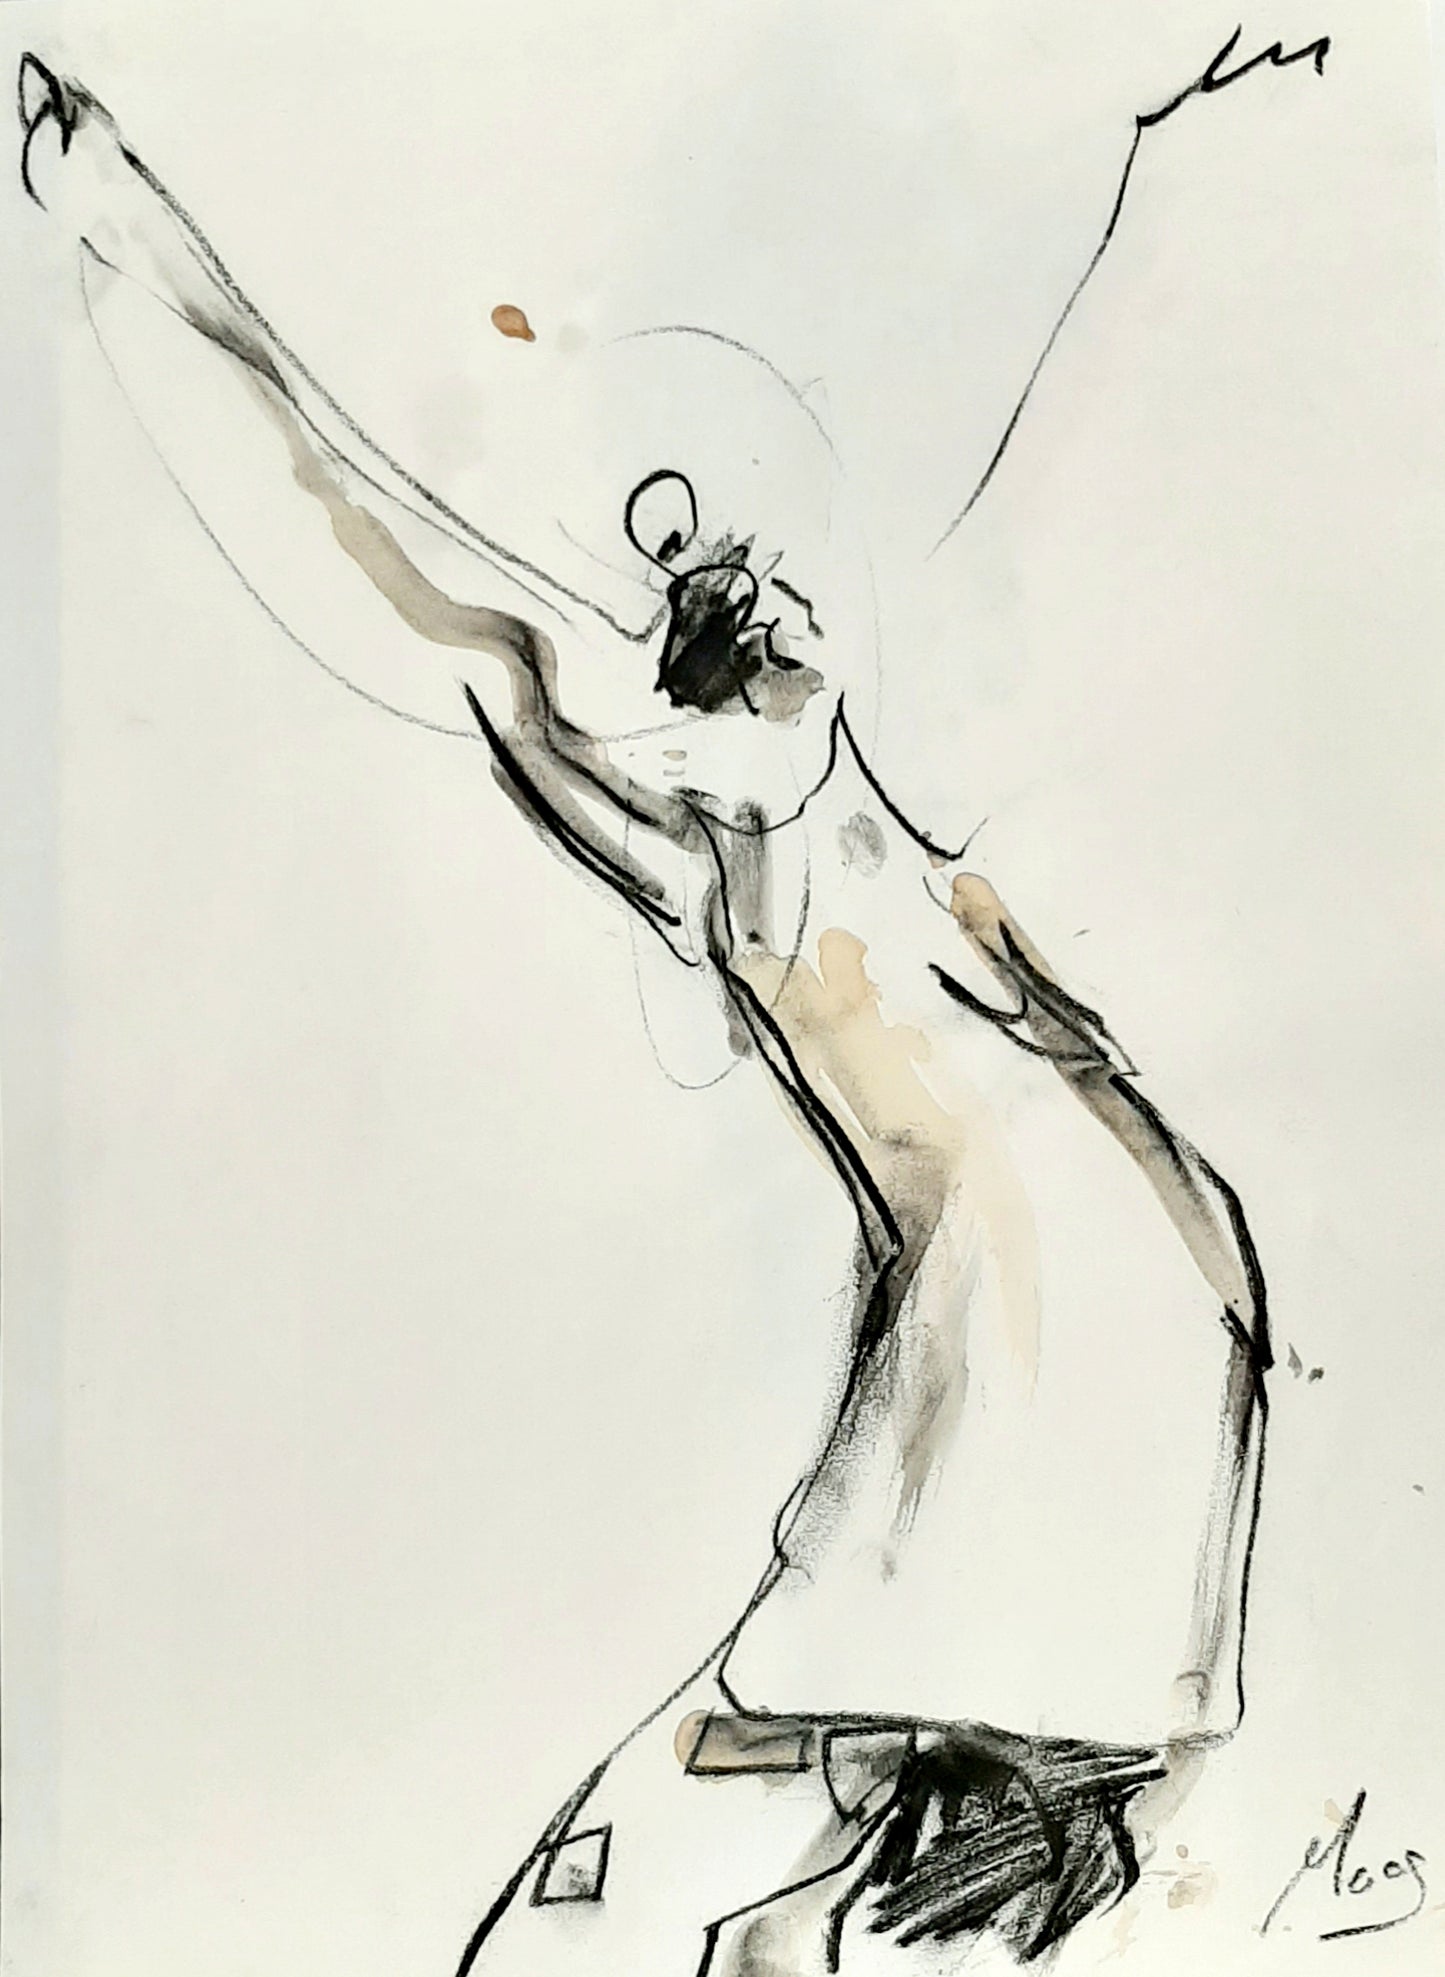 Körper Tanz frei sein - Kafee und Tusche auf Papier - 30 x 40cm